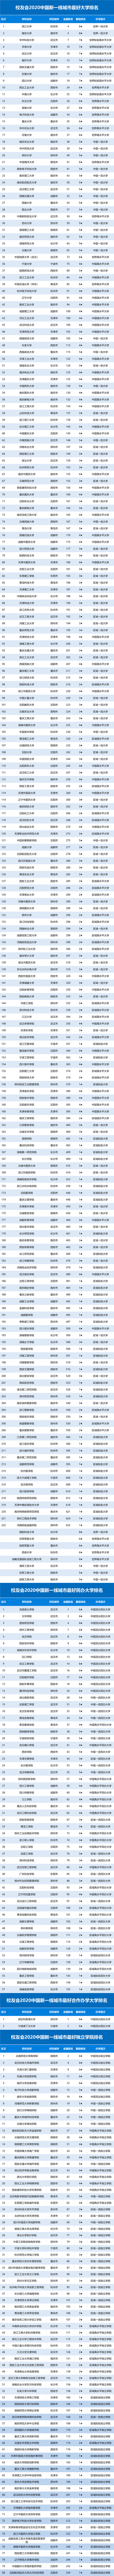 中国2020年一线排名_2020年全球城市综合排名:中国一线城市、新一线城市